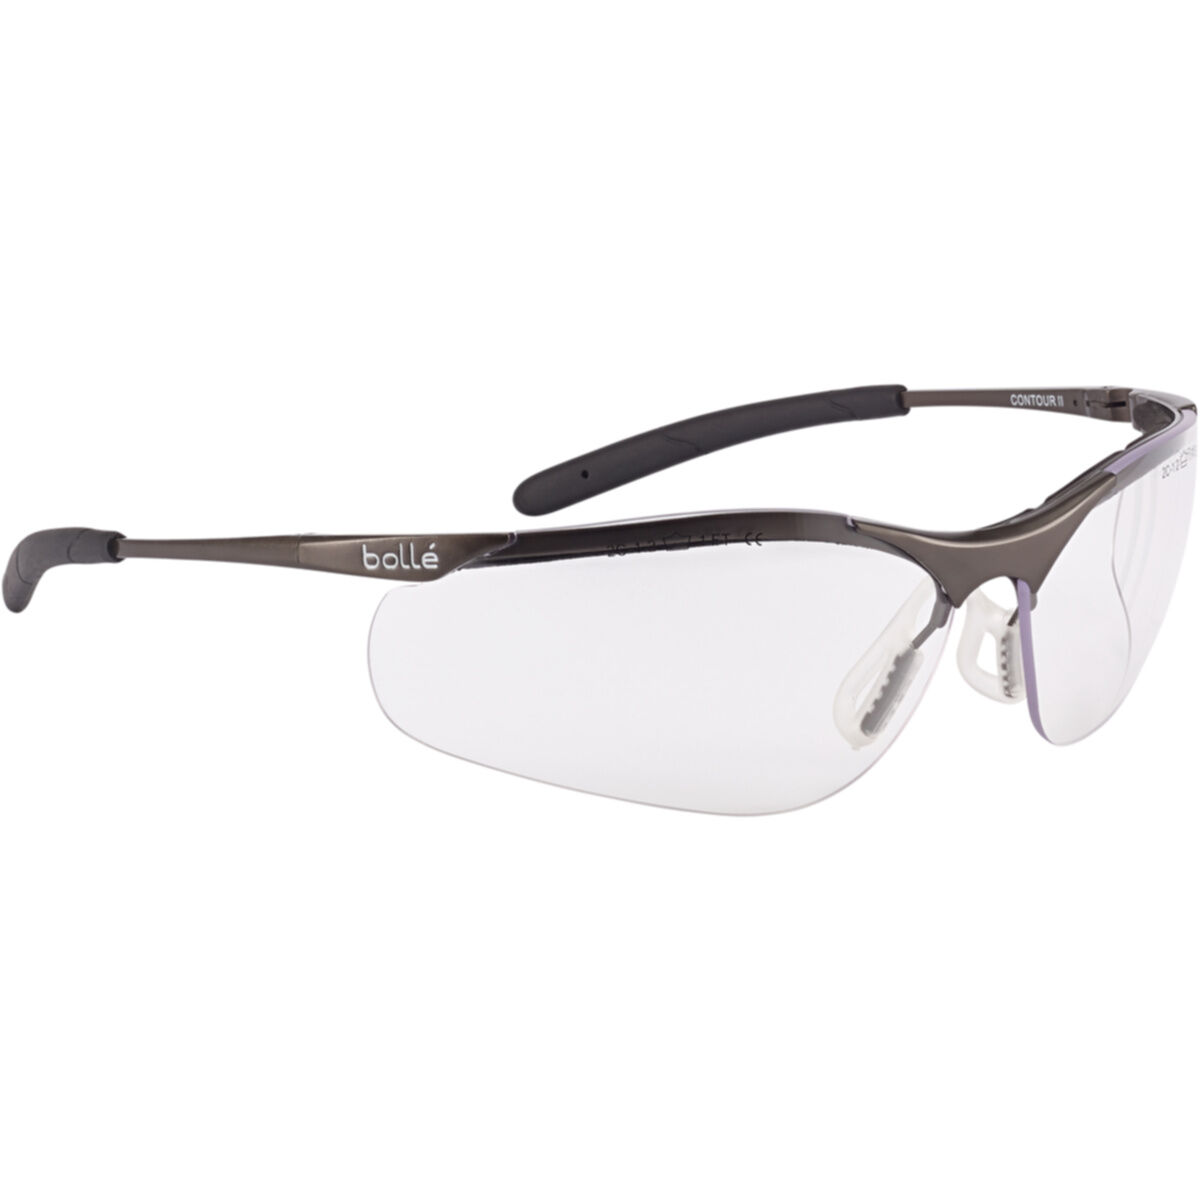 Bolle Contour Safety Specs Glasses Clear Lens 20g EN166 EN170 